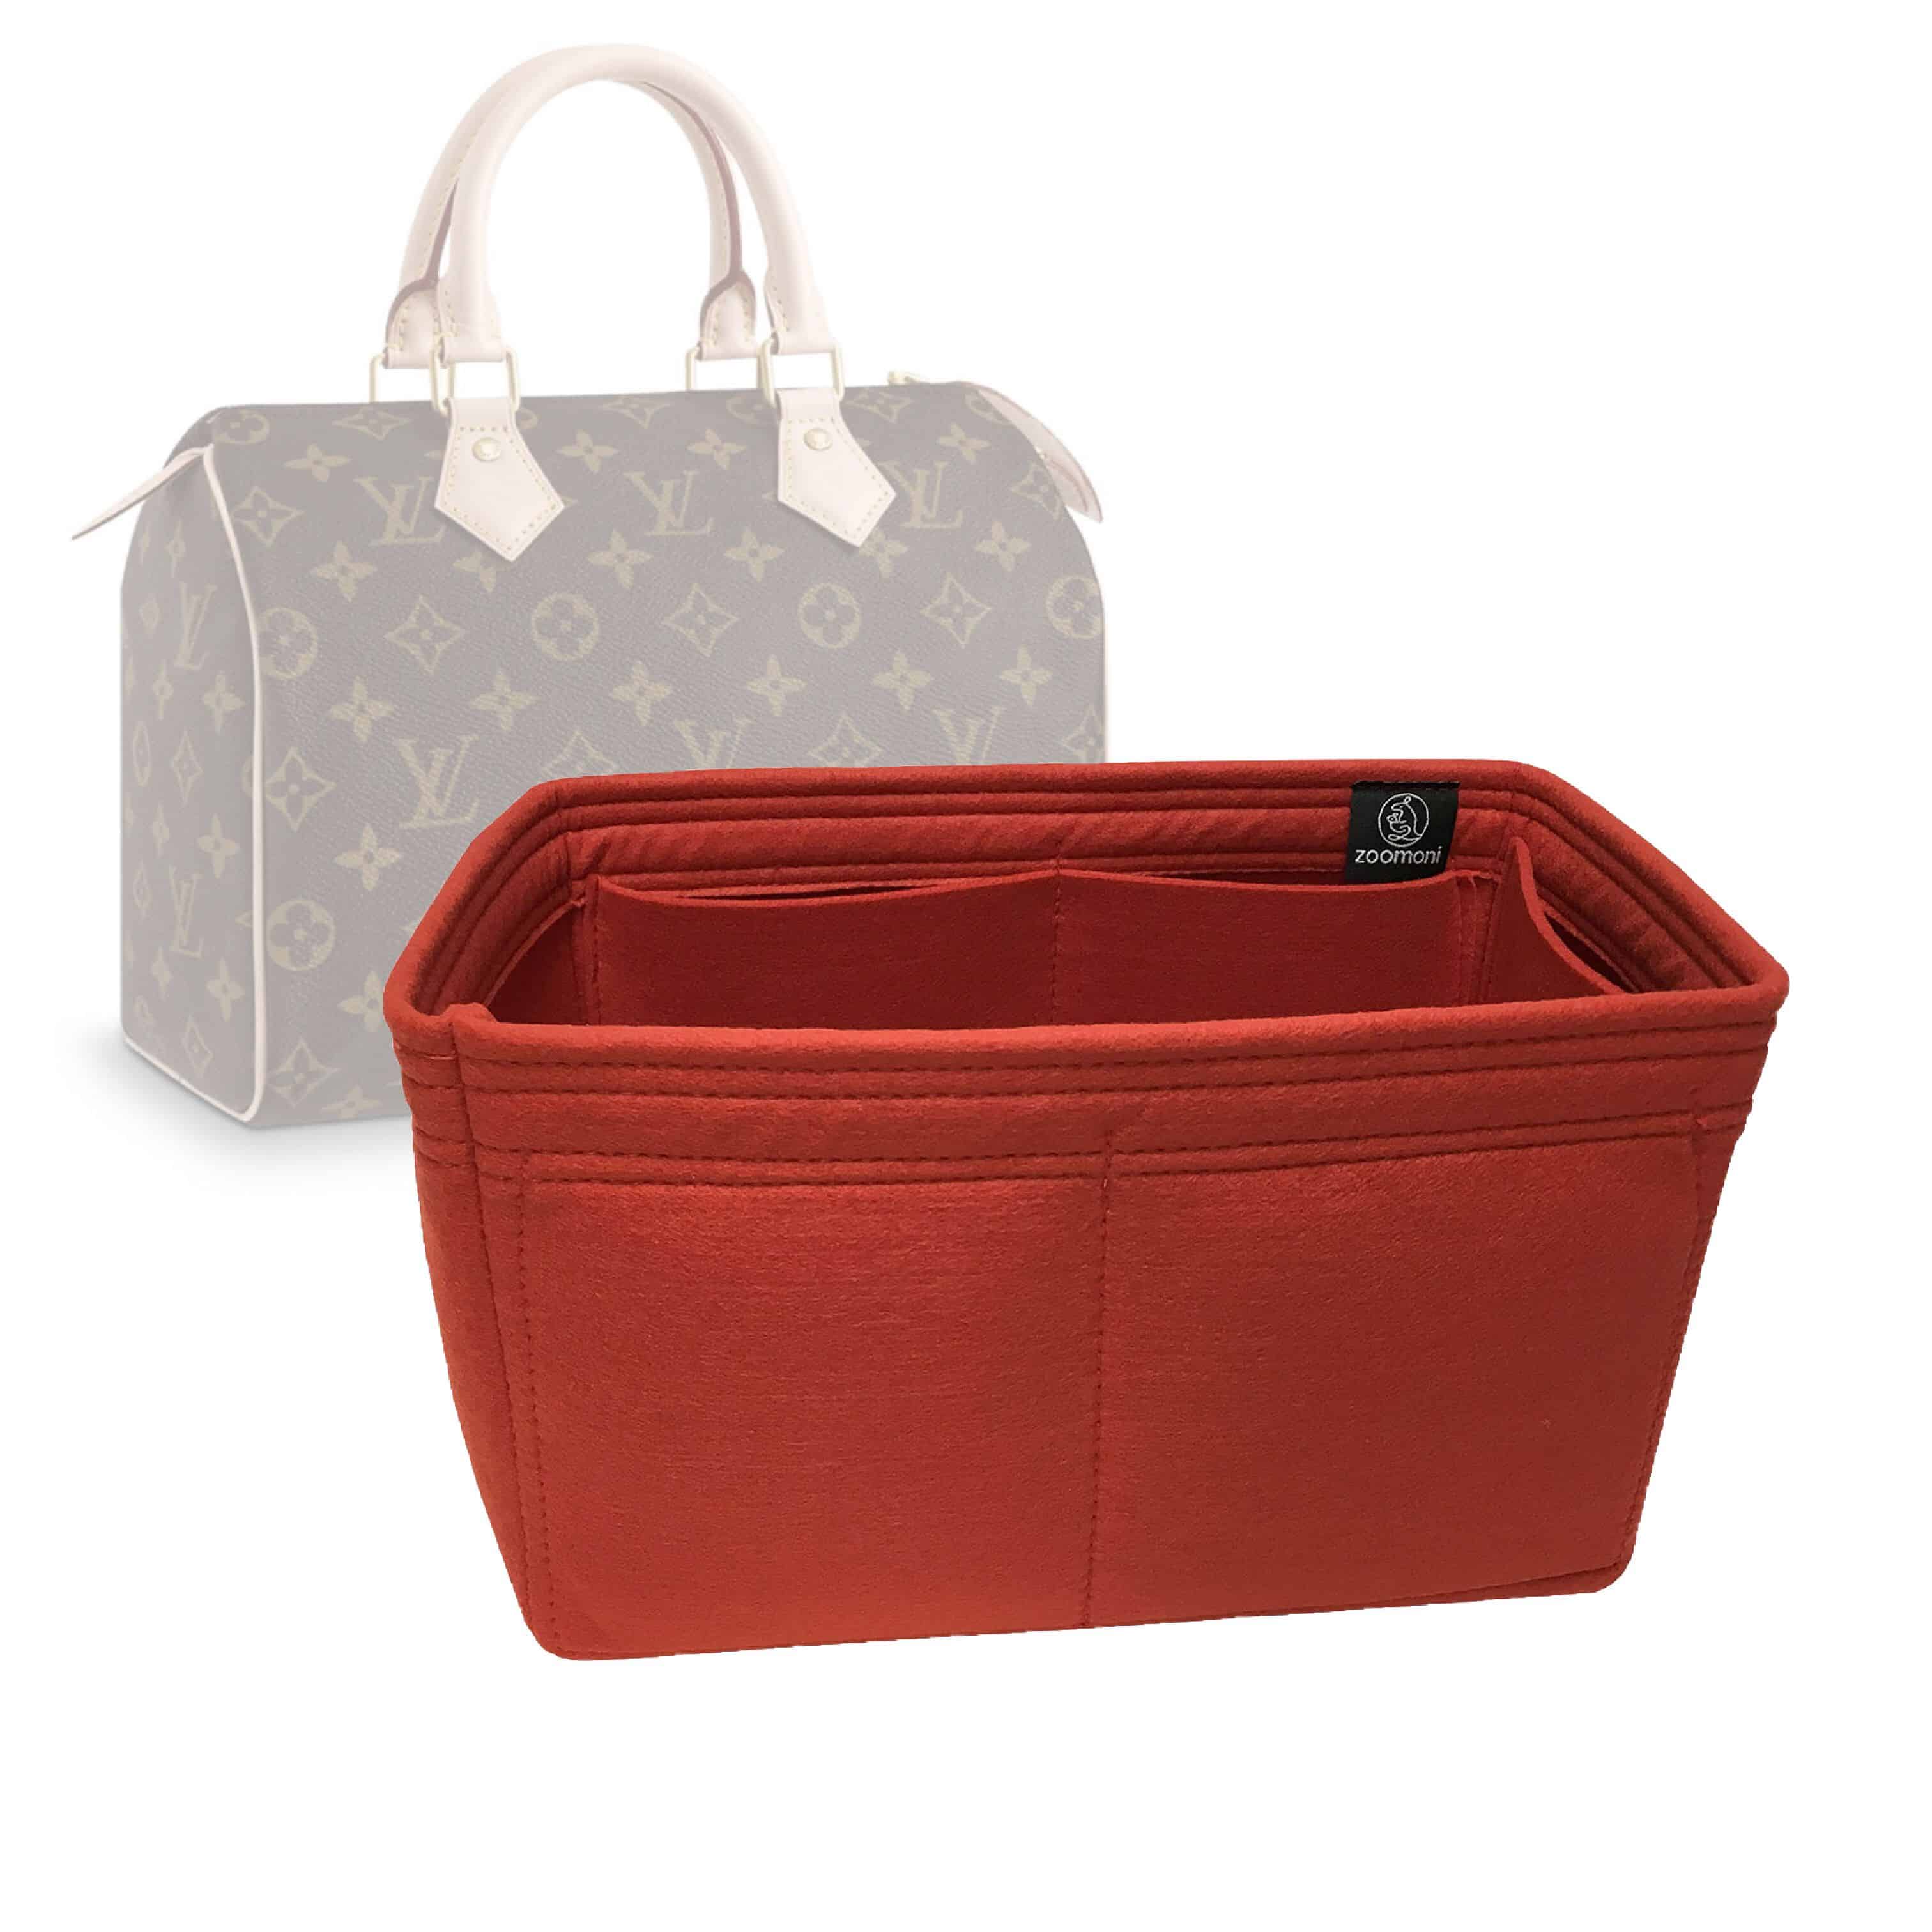 Waterproof Bag in Bag Purse Insert Organiser For SPEEDY 25 30 35 40 BROWN